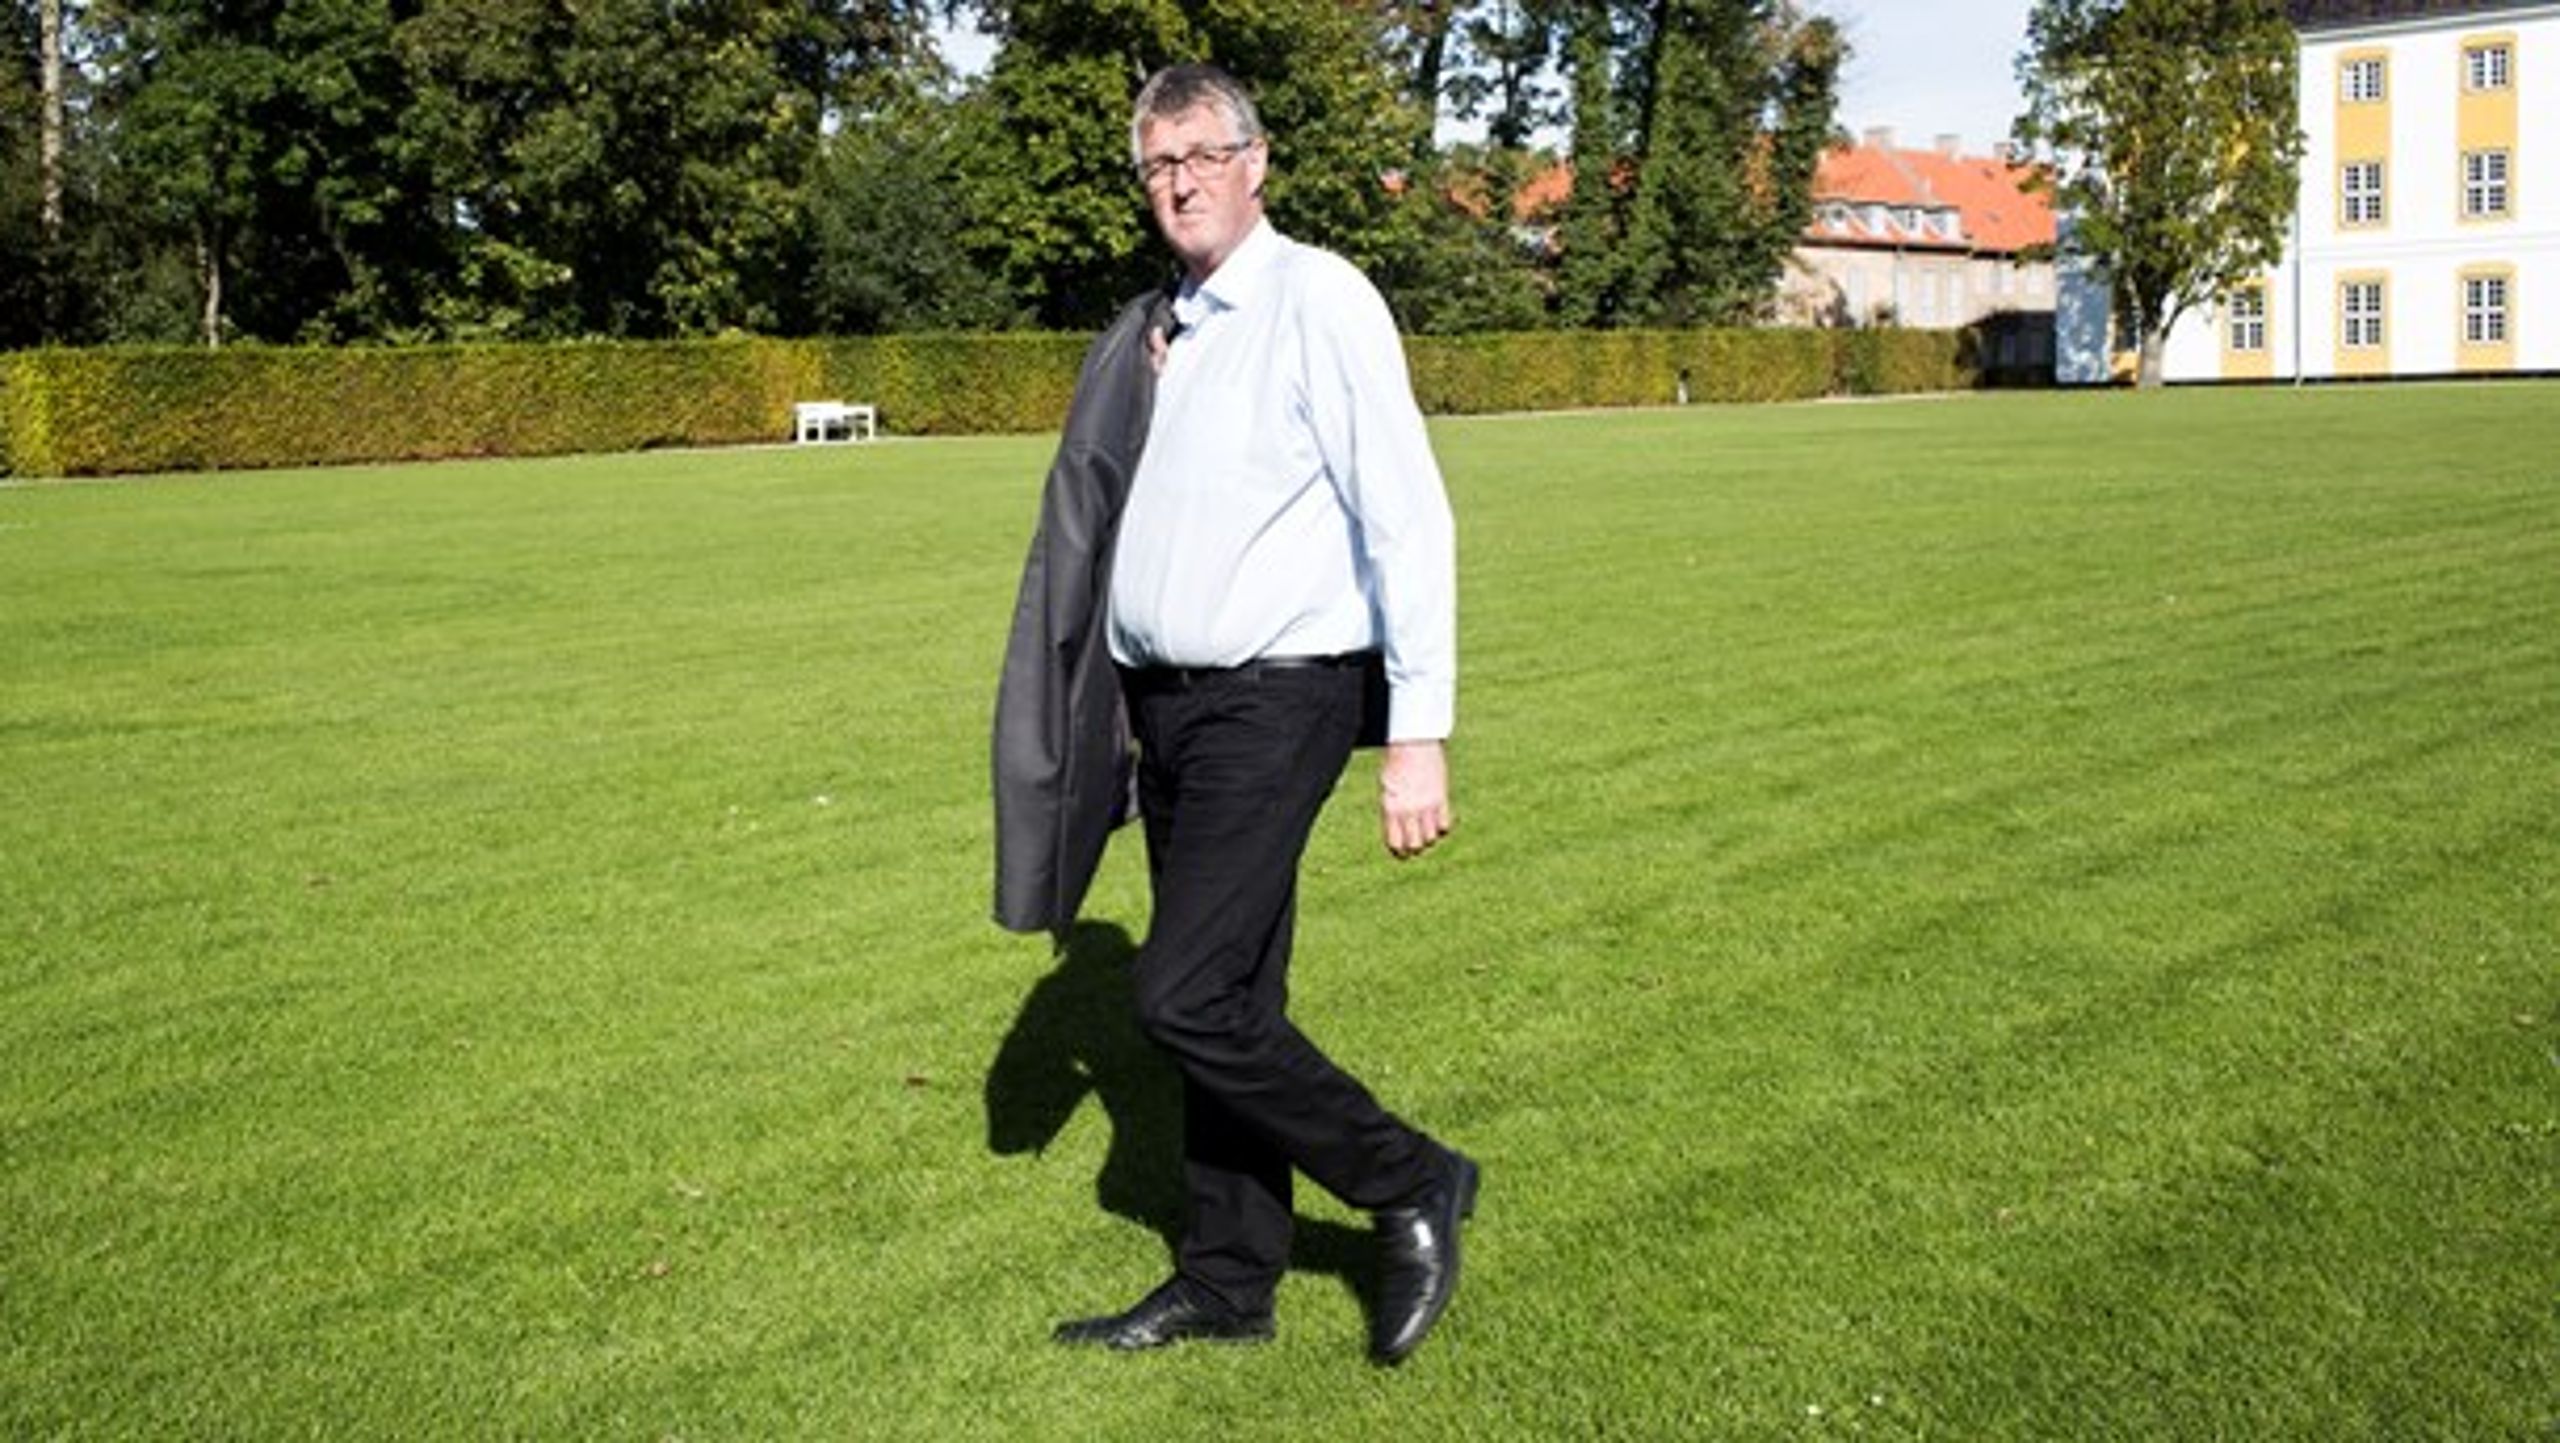 Sønderborgs siddende borgmester, Erik Lauritzen (S), er træt af, at formand for Danfoss' bestyrelse har anbefalet en anden kandidat end ham som borgmester.